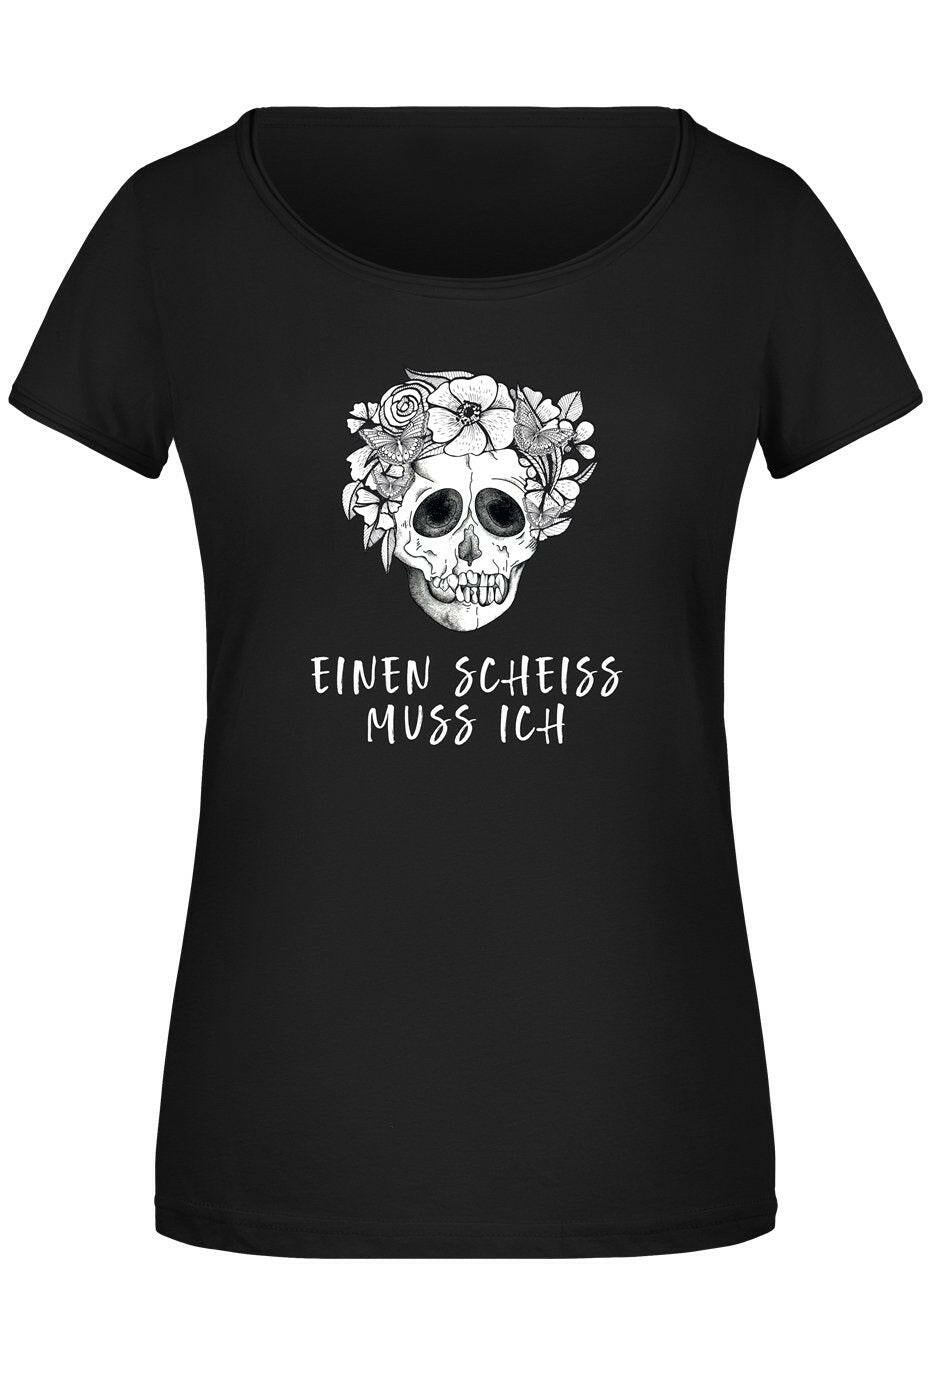 Bild: T-Shirt Damen - Einen Scheiss muss ich - Totenkopf Geschenkidee